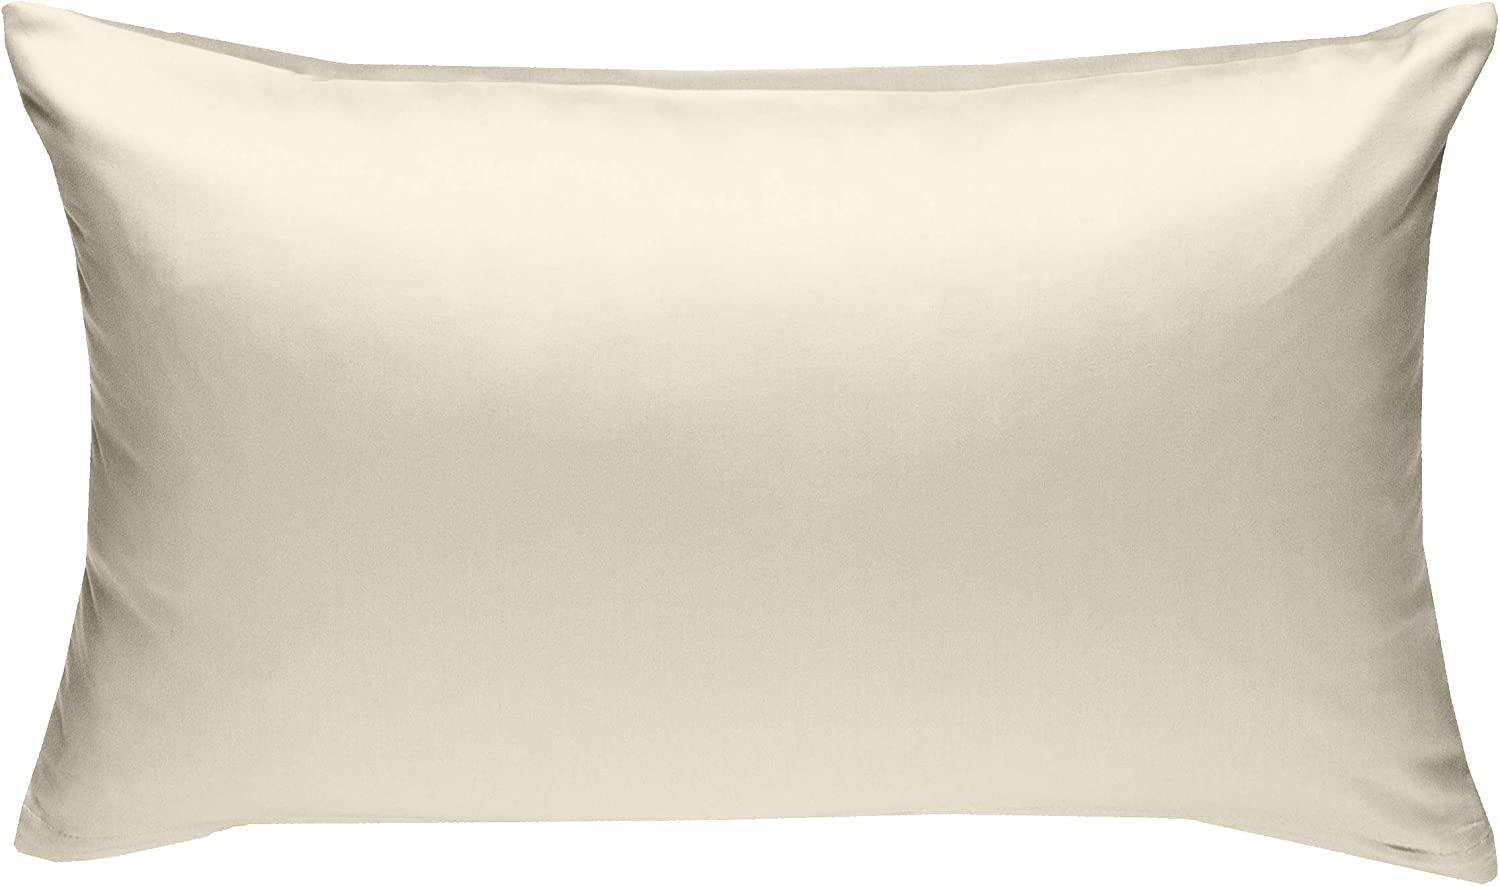 Bettwaesche-mit-Stil Mako-Satin / Baumwollsatin Bettwäsche uni / einfarbig natur Kissenbezug 60x80 cm Bild 1